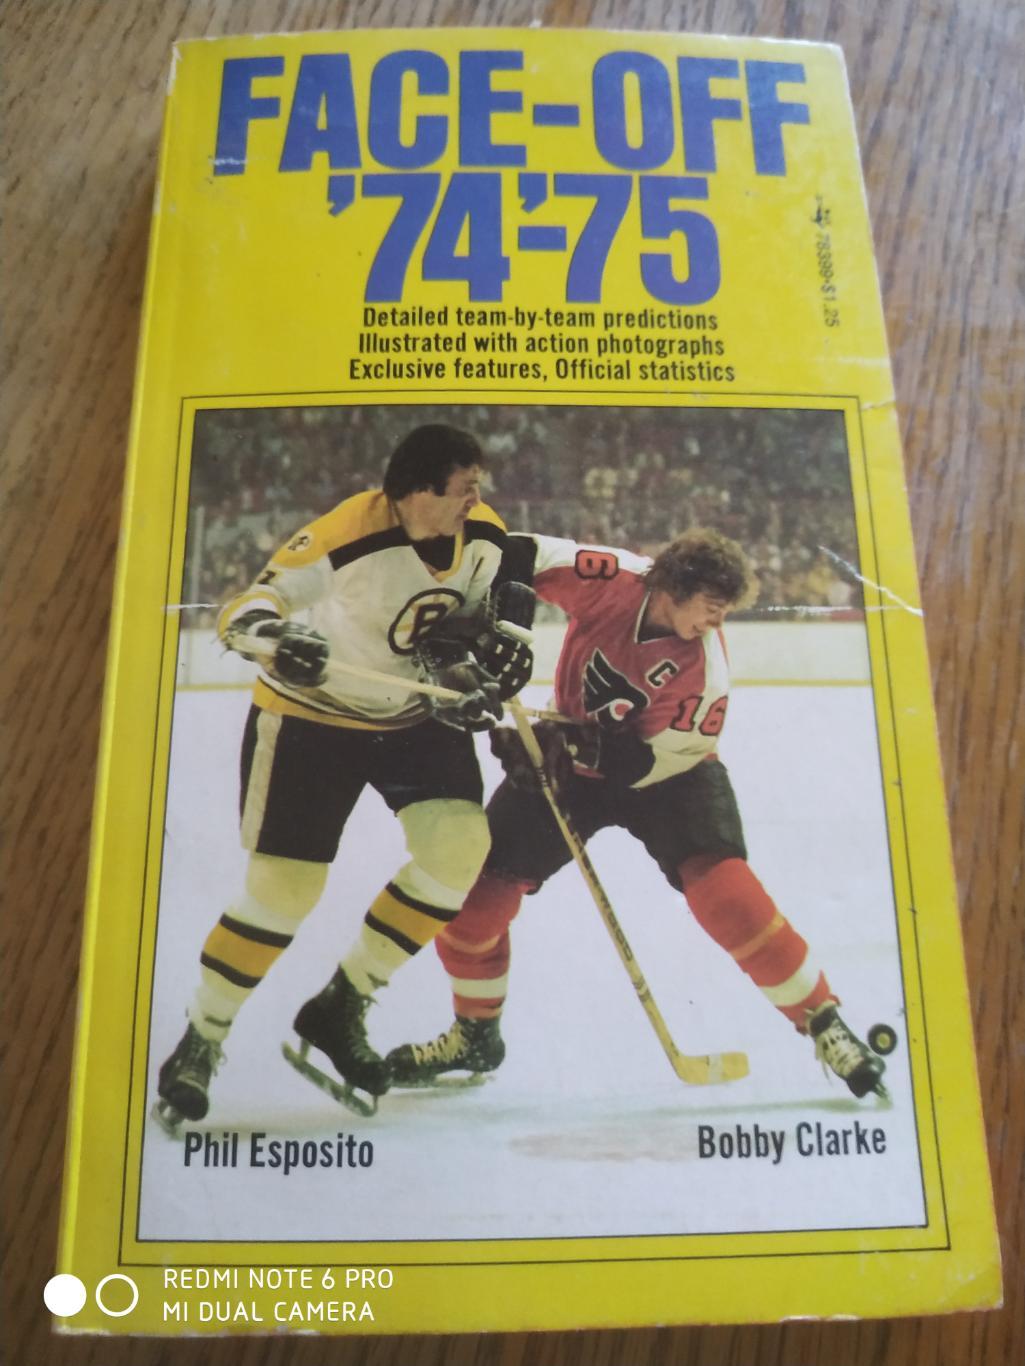 ХОККЕЙ КНИГА СПРАВОЧНИК НХЛ 1974-75 NHL FACE-OFF POCKET BOOK